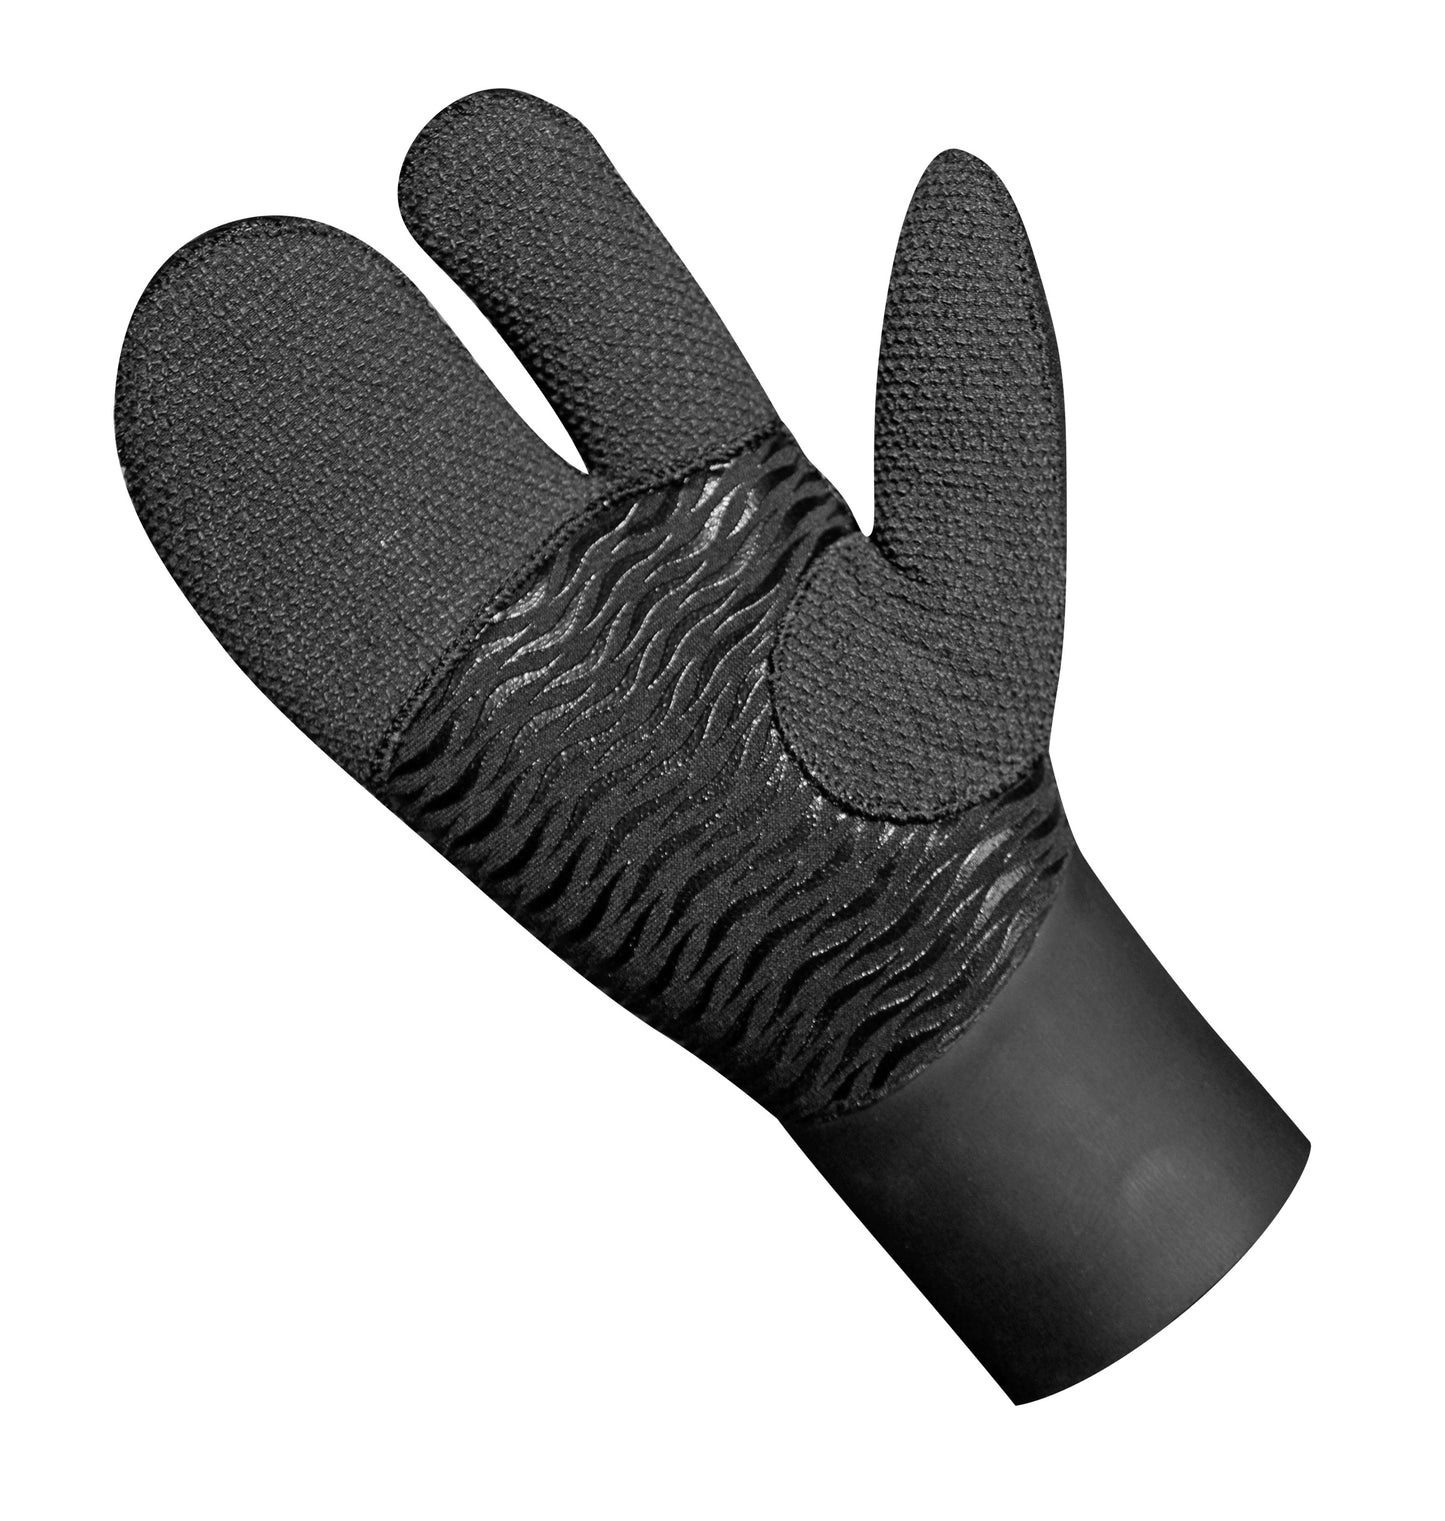 Frivannsliv® Soft Grip 3-finger mitt 7mm